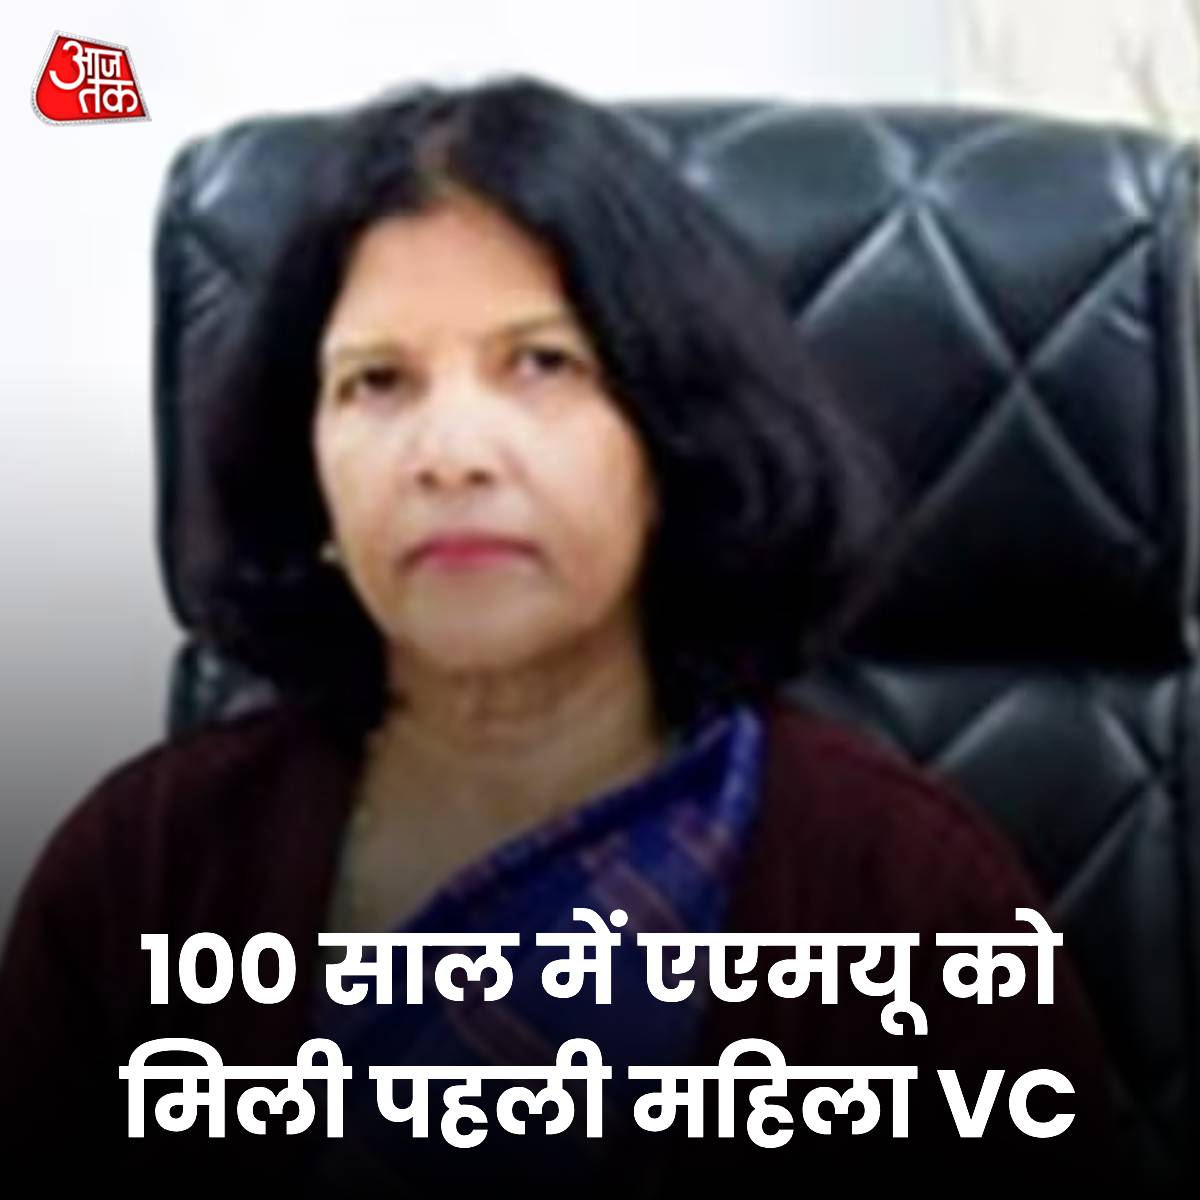 नईमा खातून AMU की नई वाइस चांसलर, 100 साल में यूनिवर्सिटी को मिली पहली महिला VC उत्तर प्रदेश की प्रतिष्ठित अलीगढ़ मुस्लिम यूनिवर्सिटी (AMU) ने नईमा खातून को वाइस चांसलर नियुक्त किया है. वह यूनिवर्सिटी के लगभग 100 सालों के इतिहास में इस पद पर पहुंचने वाली पहली महिला हैं. नईमा